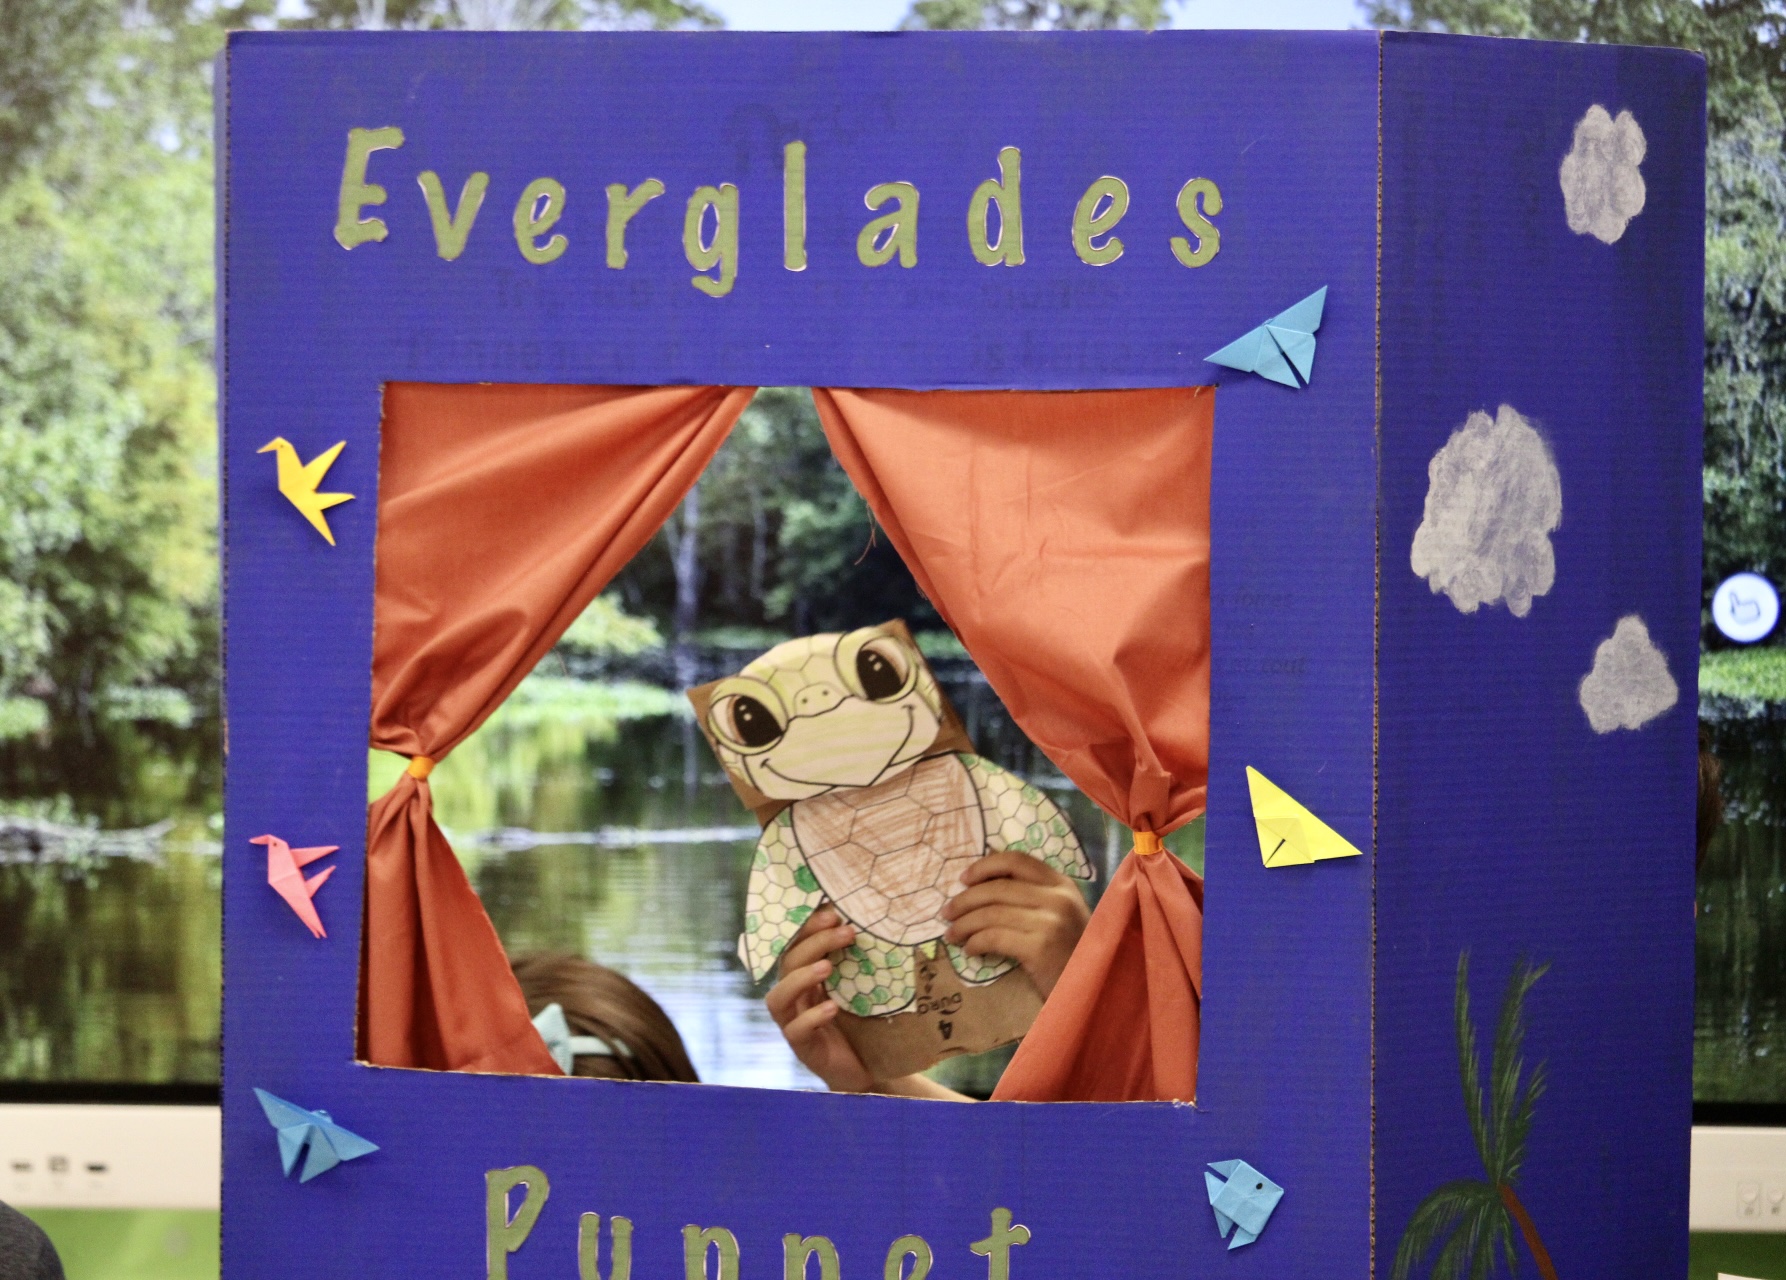 Everglades puppet show